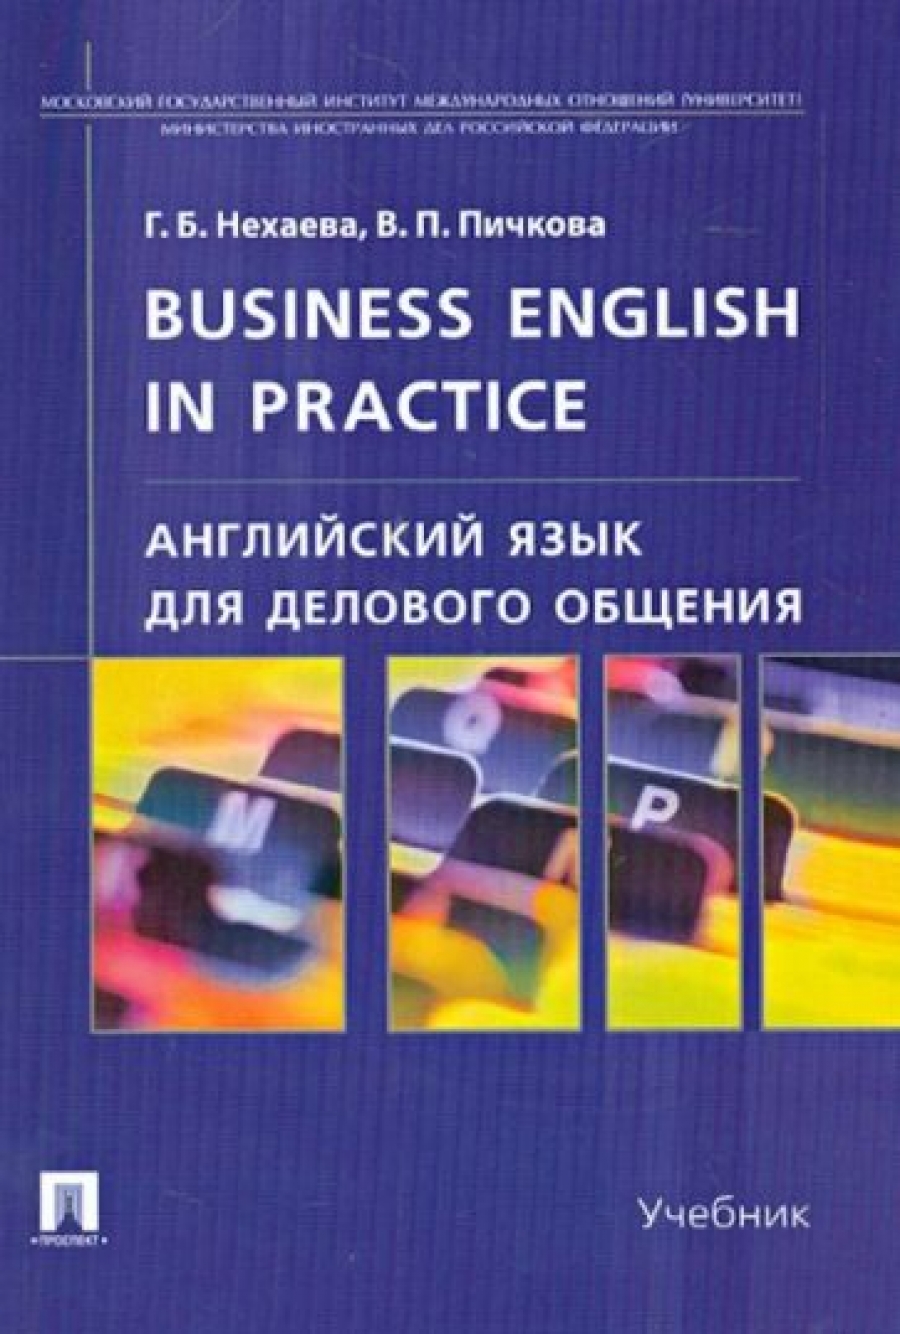 Нехаева Г.Б., Пичкова В.П. Английский язык для делового общения / Business English in practice 